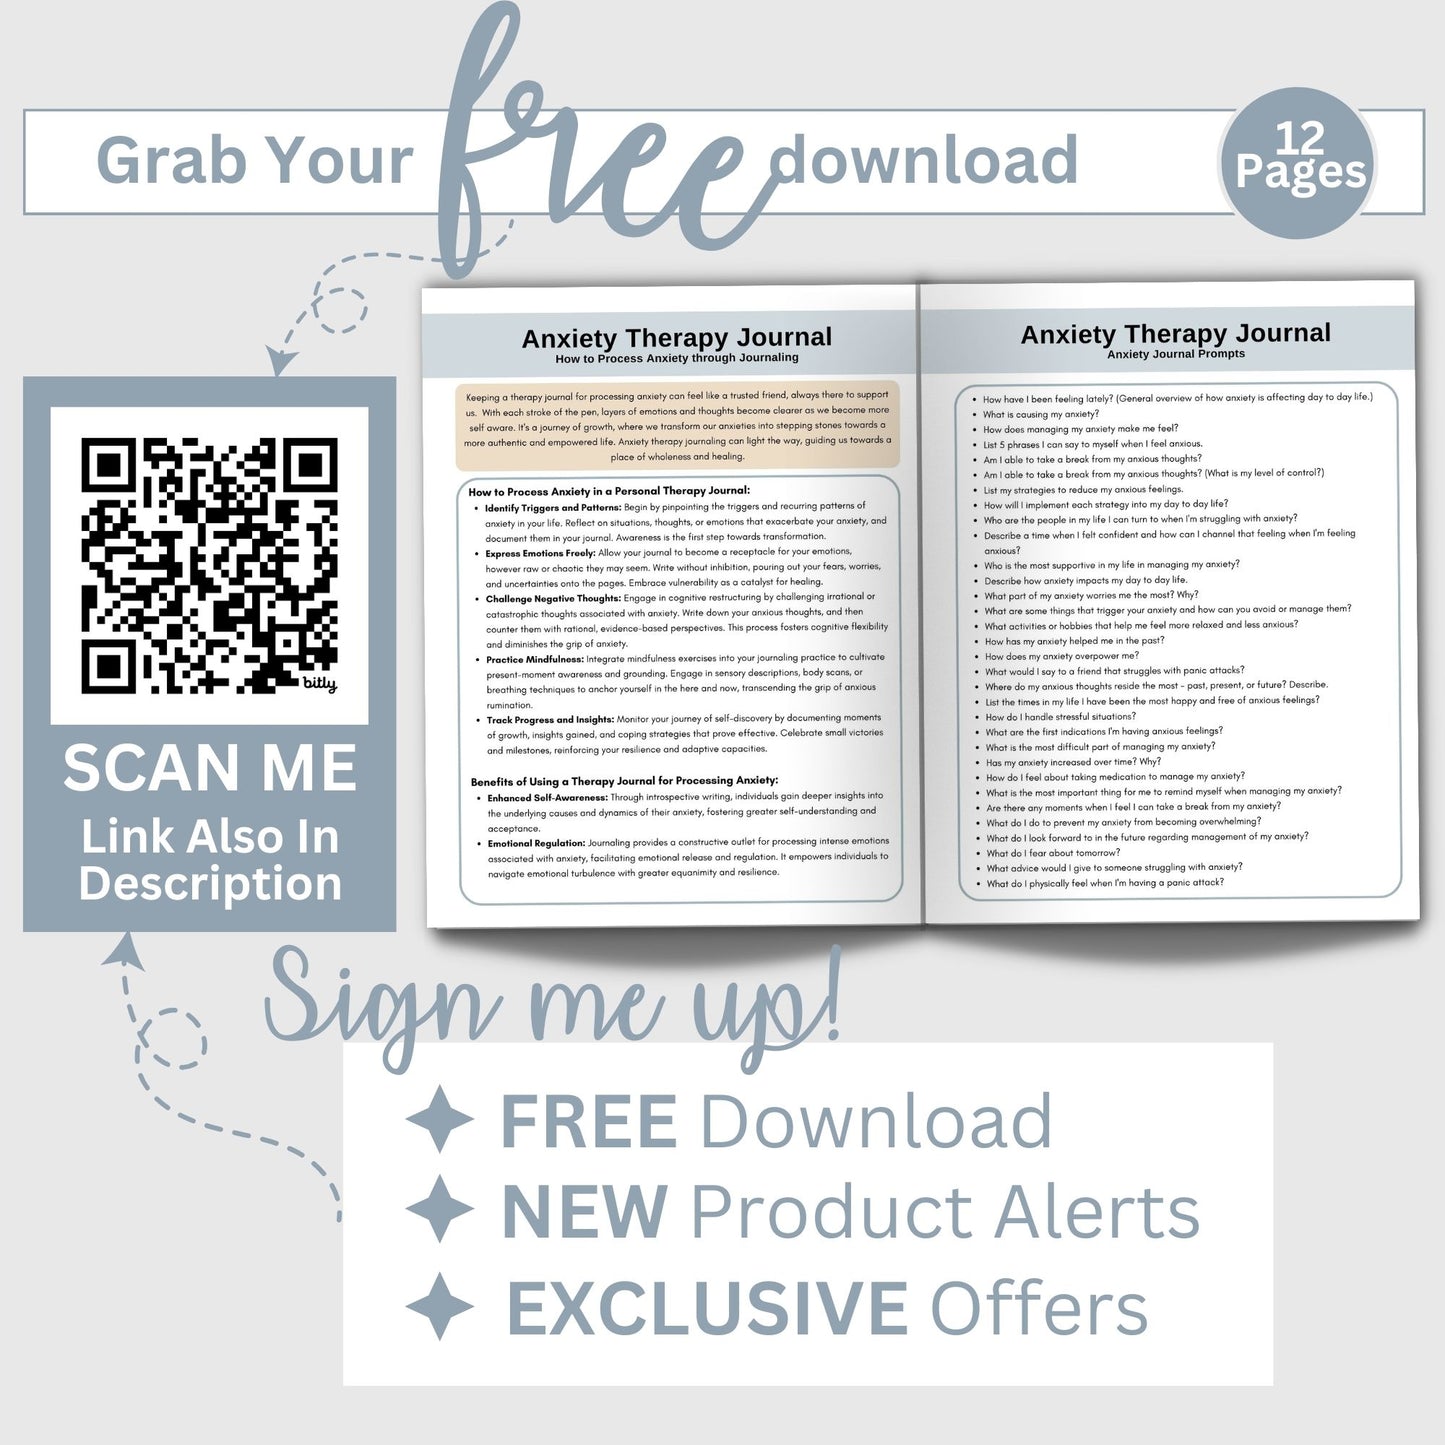 Therapy Documentation Bundle:  Streamline Your Documentation Process